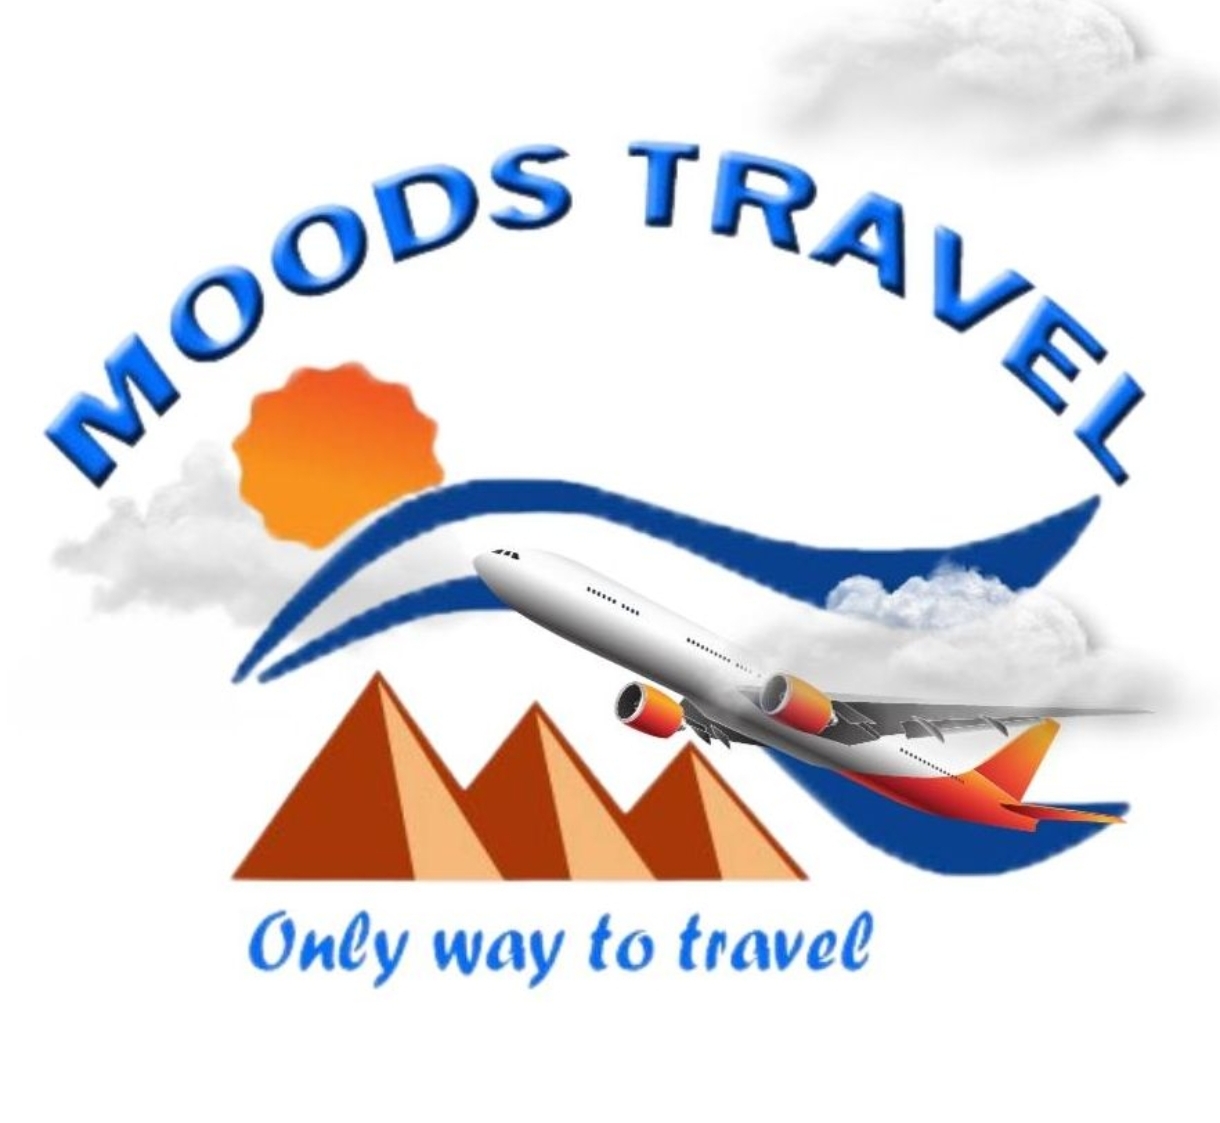 Pour la deuxième fois consécutive, Moods Tourism Company est active dans le tourisme en Egypte en invitant des entreprises marocaines, algériennes et tunisien*.